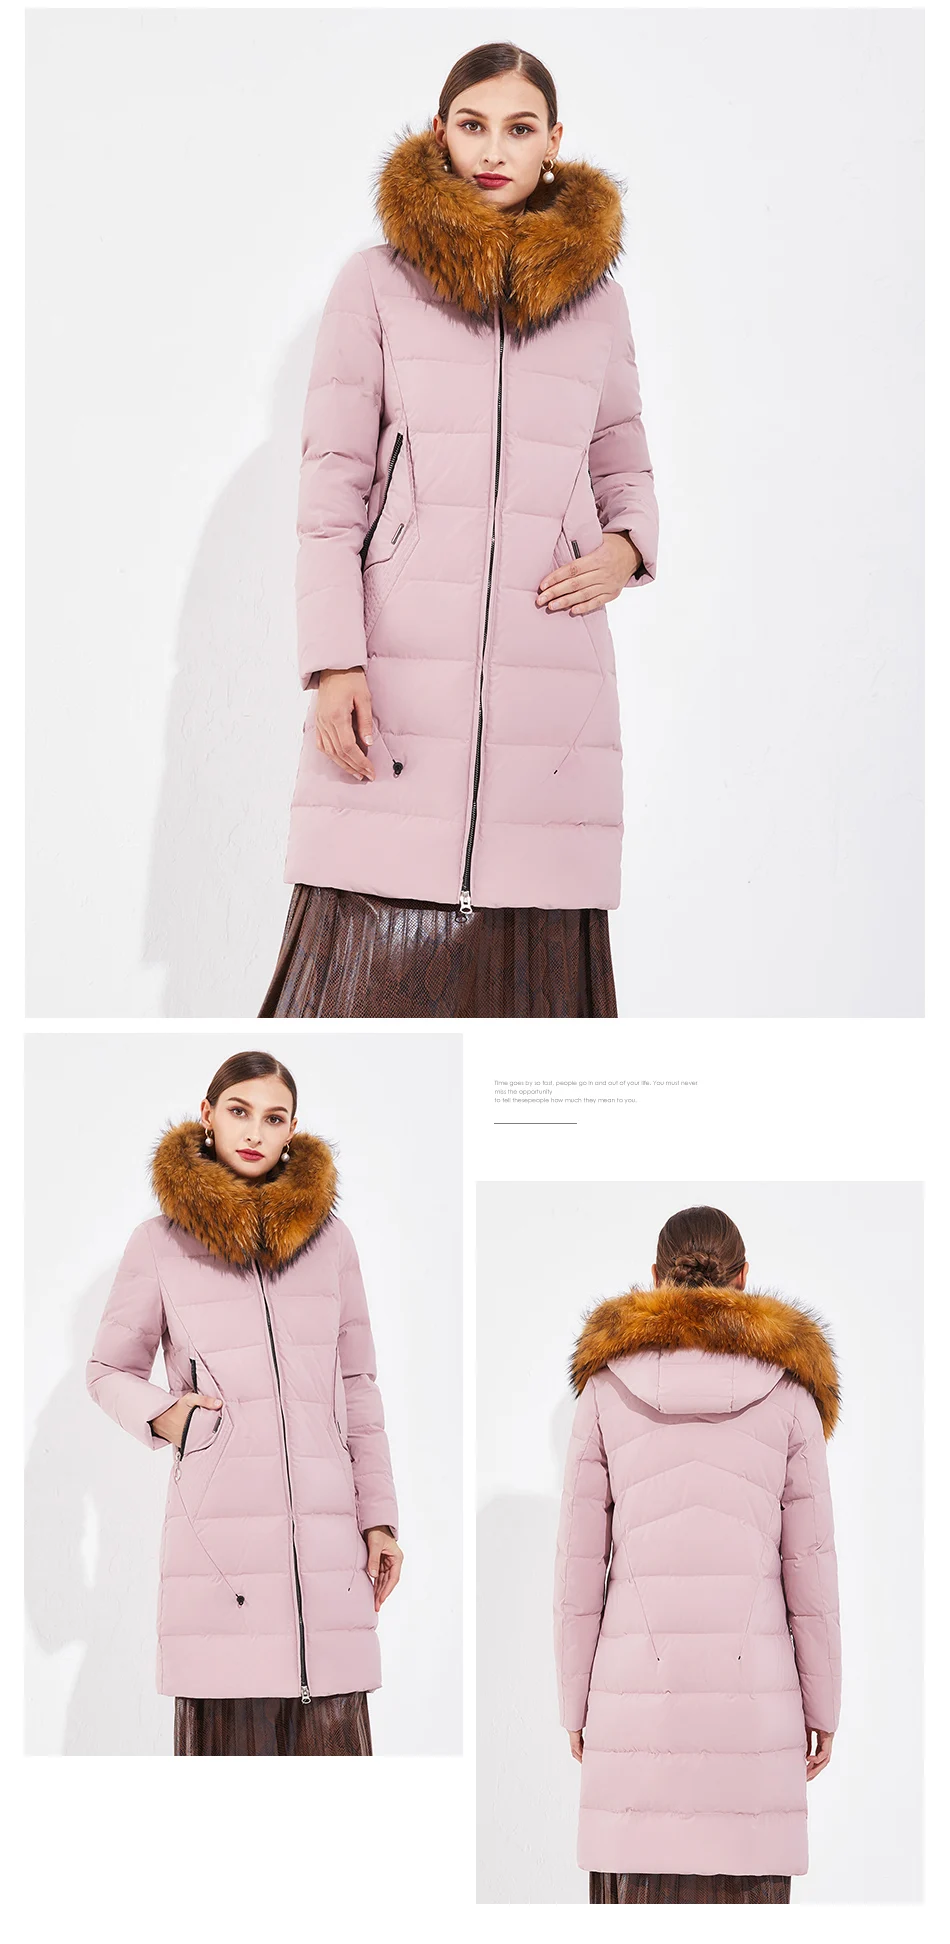 Eurasia/Новинка года; женская зимняя куртка; парка с воротником-стойкой и капюшоном; плотное Стеганое пальто из натурального меха енота; YD1871